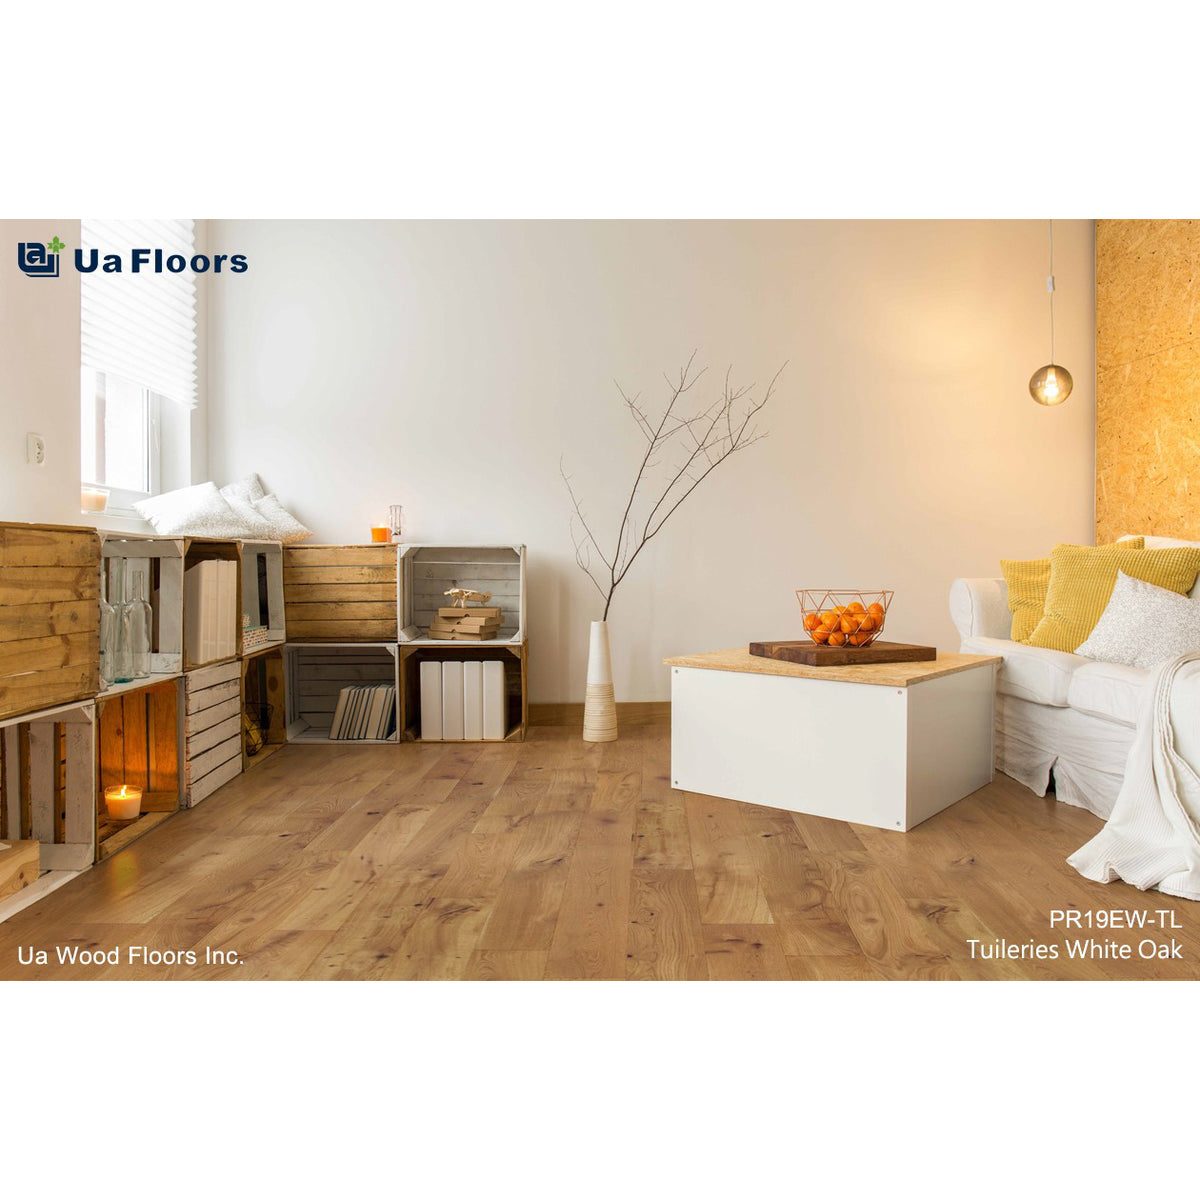 Ua Floors - The Parisian Series - Tuileries Oak Room Scene